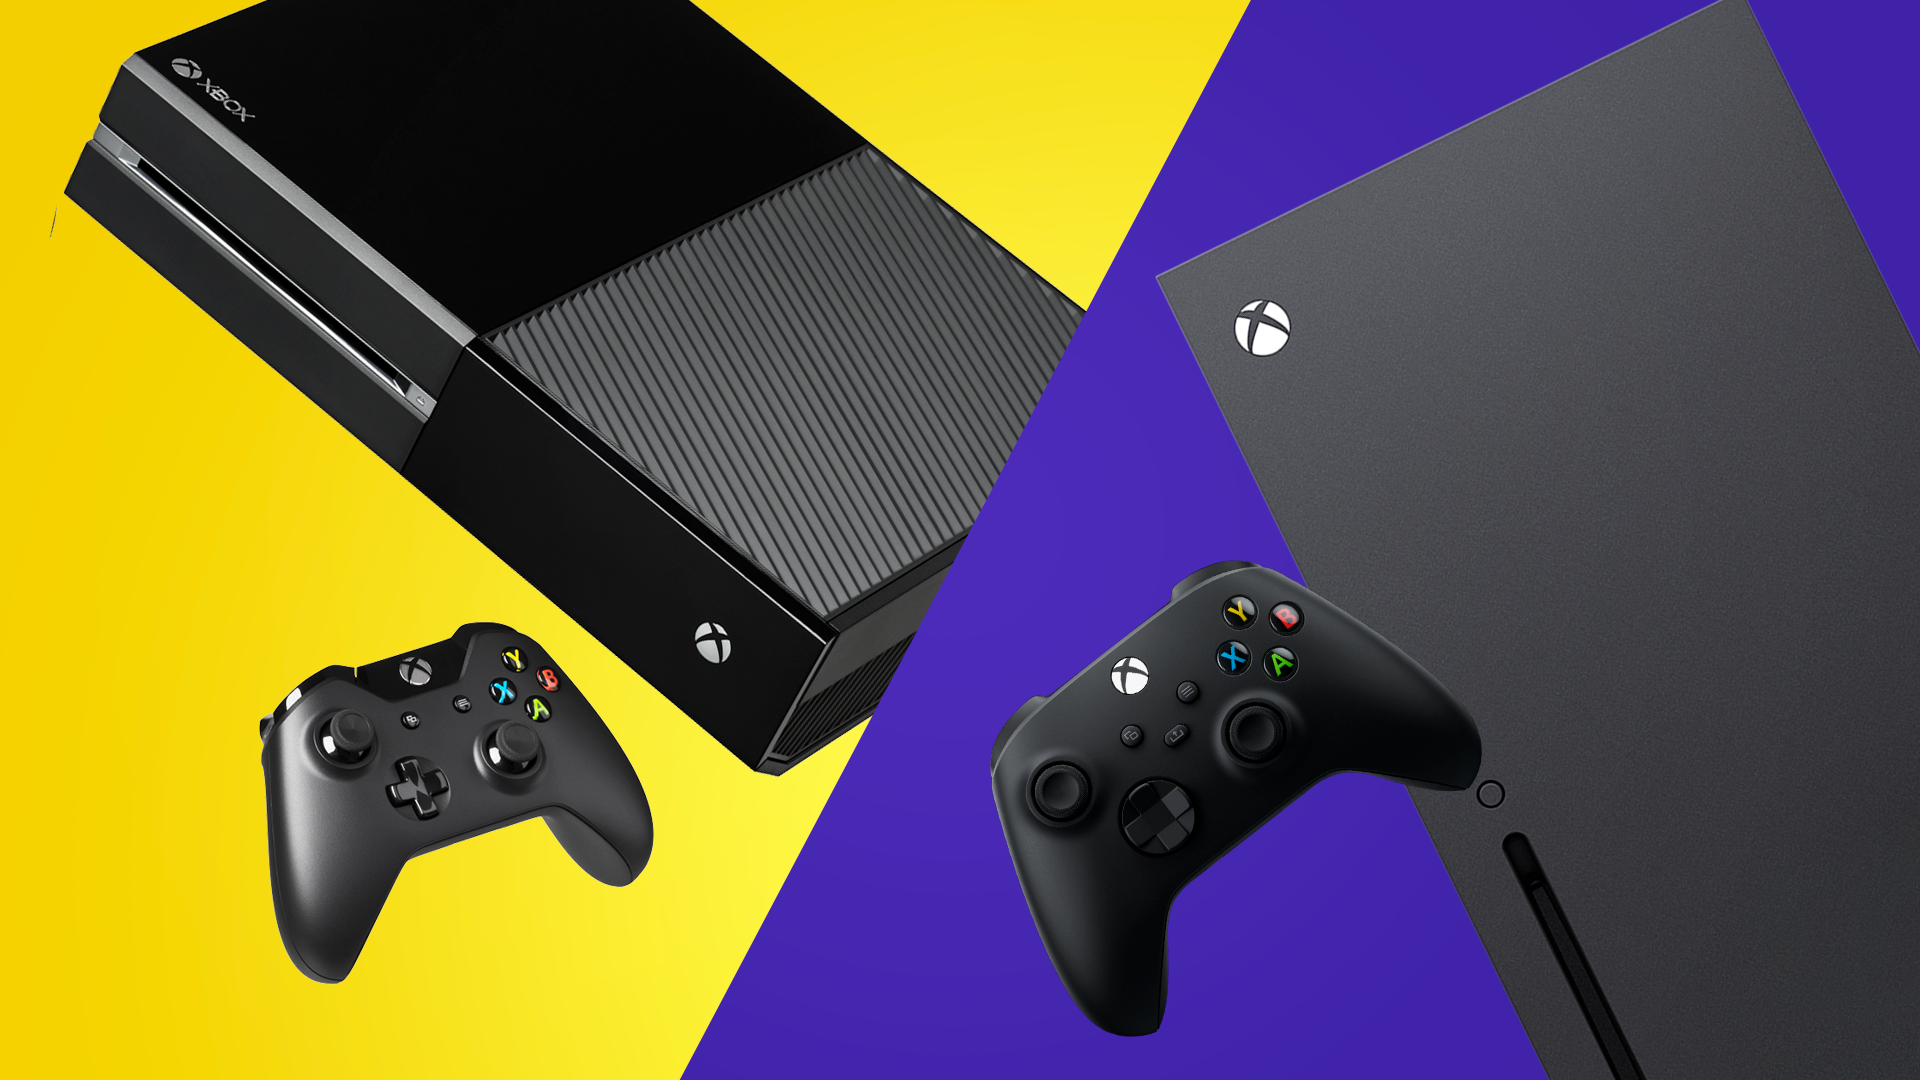 Xbox Series X - Pronta Entrega em nossa Loja Física - Games Você Compra  Venda Troca e Assistência de games em geral